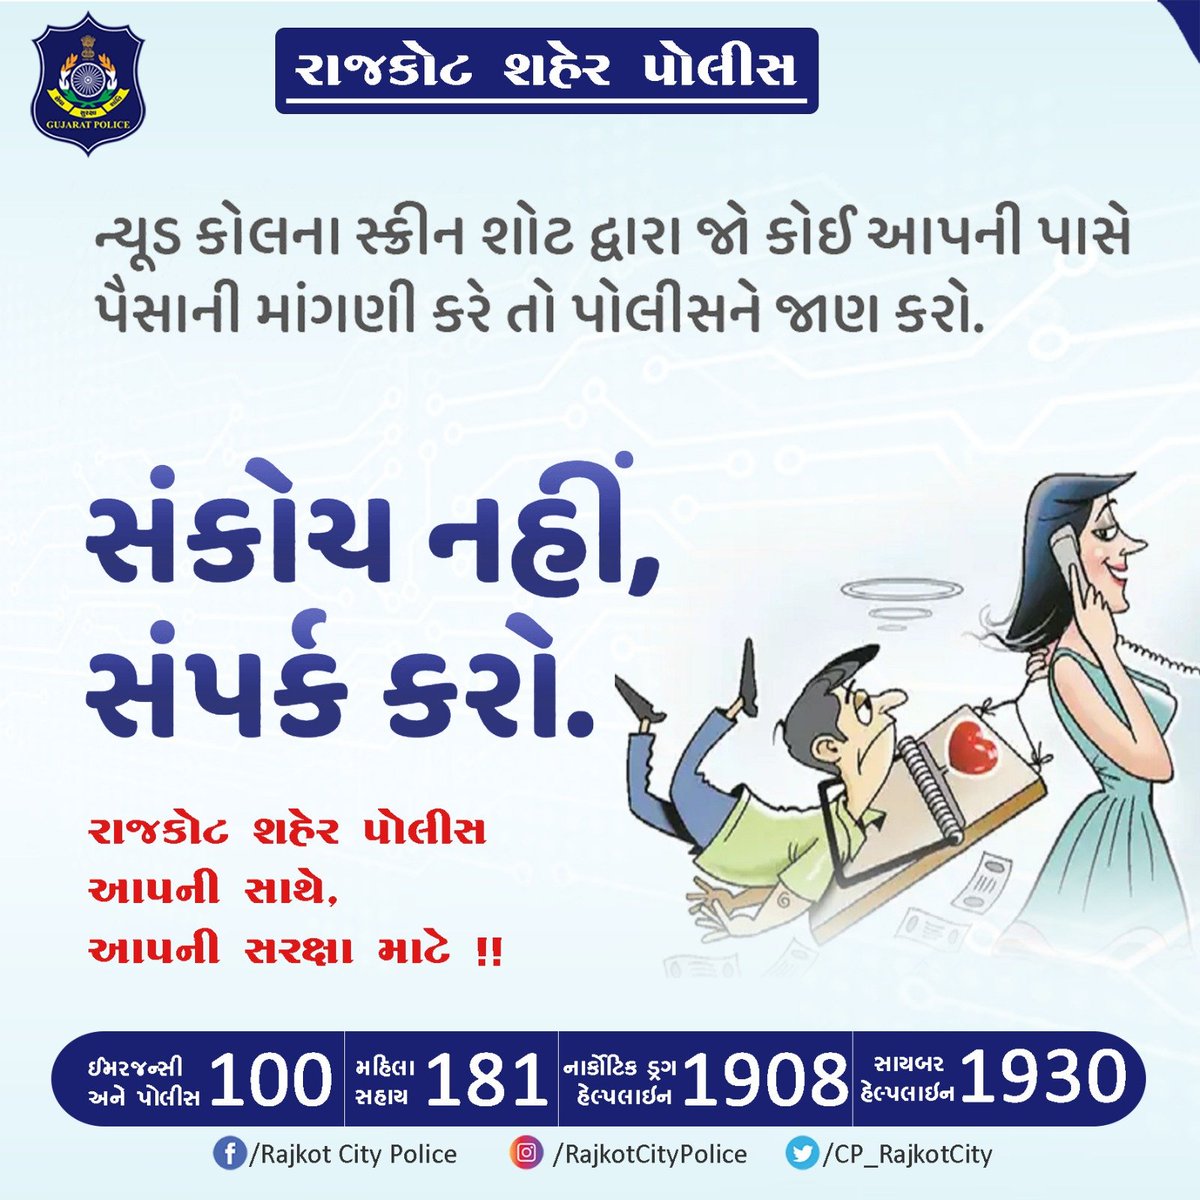 ન્યૂડ કોલના સ્ક્રીન શોટ દ્વારા જો કોઈ આપની પાસે પૈસાની માંગણી કરે તો પોલીસને જાણ કરો. 

#RajkotCityPolice #Rajkot #GujaratPolice #Gujarat #StaySafe #CyberSafety #CyberCrime #NudeCallsAwareness @GujaratPolice